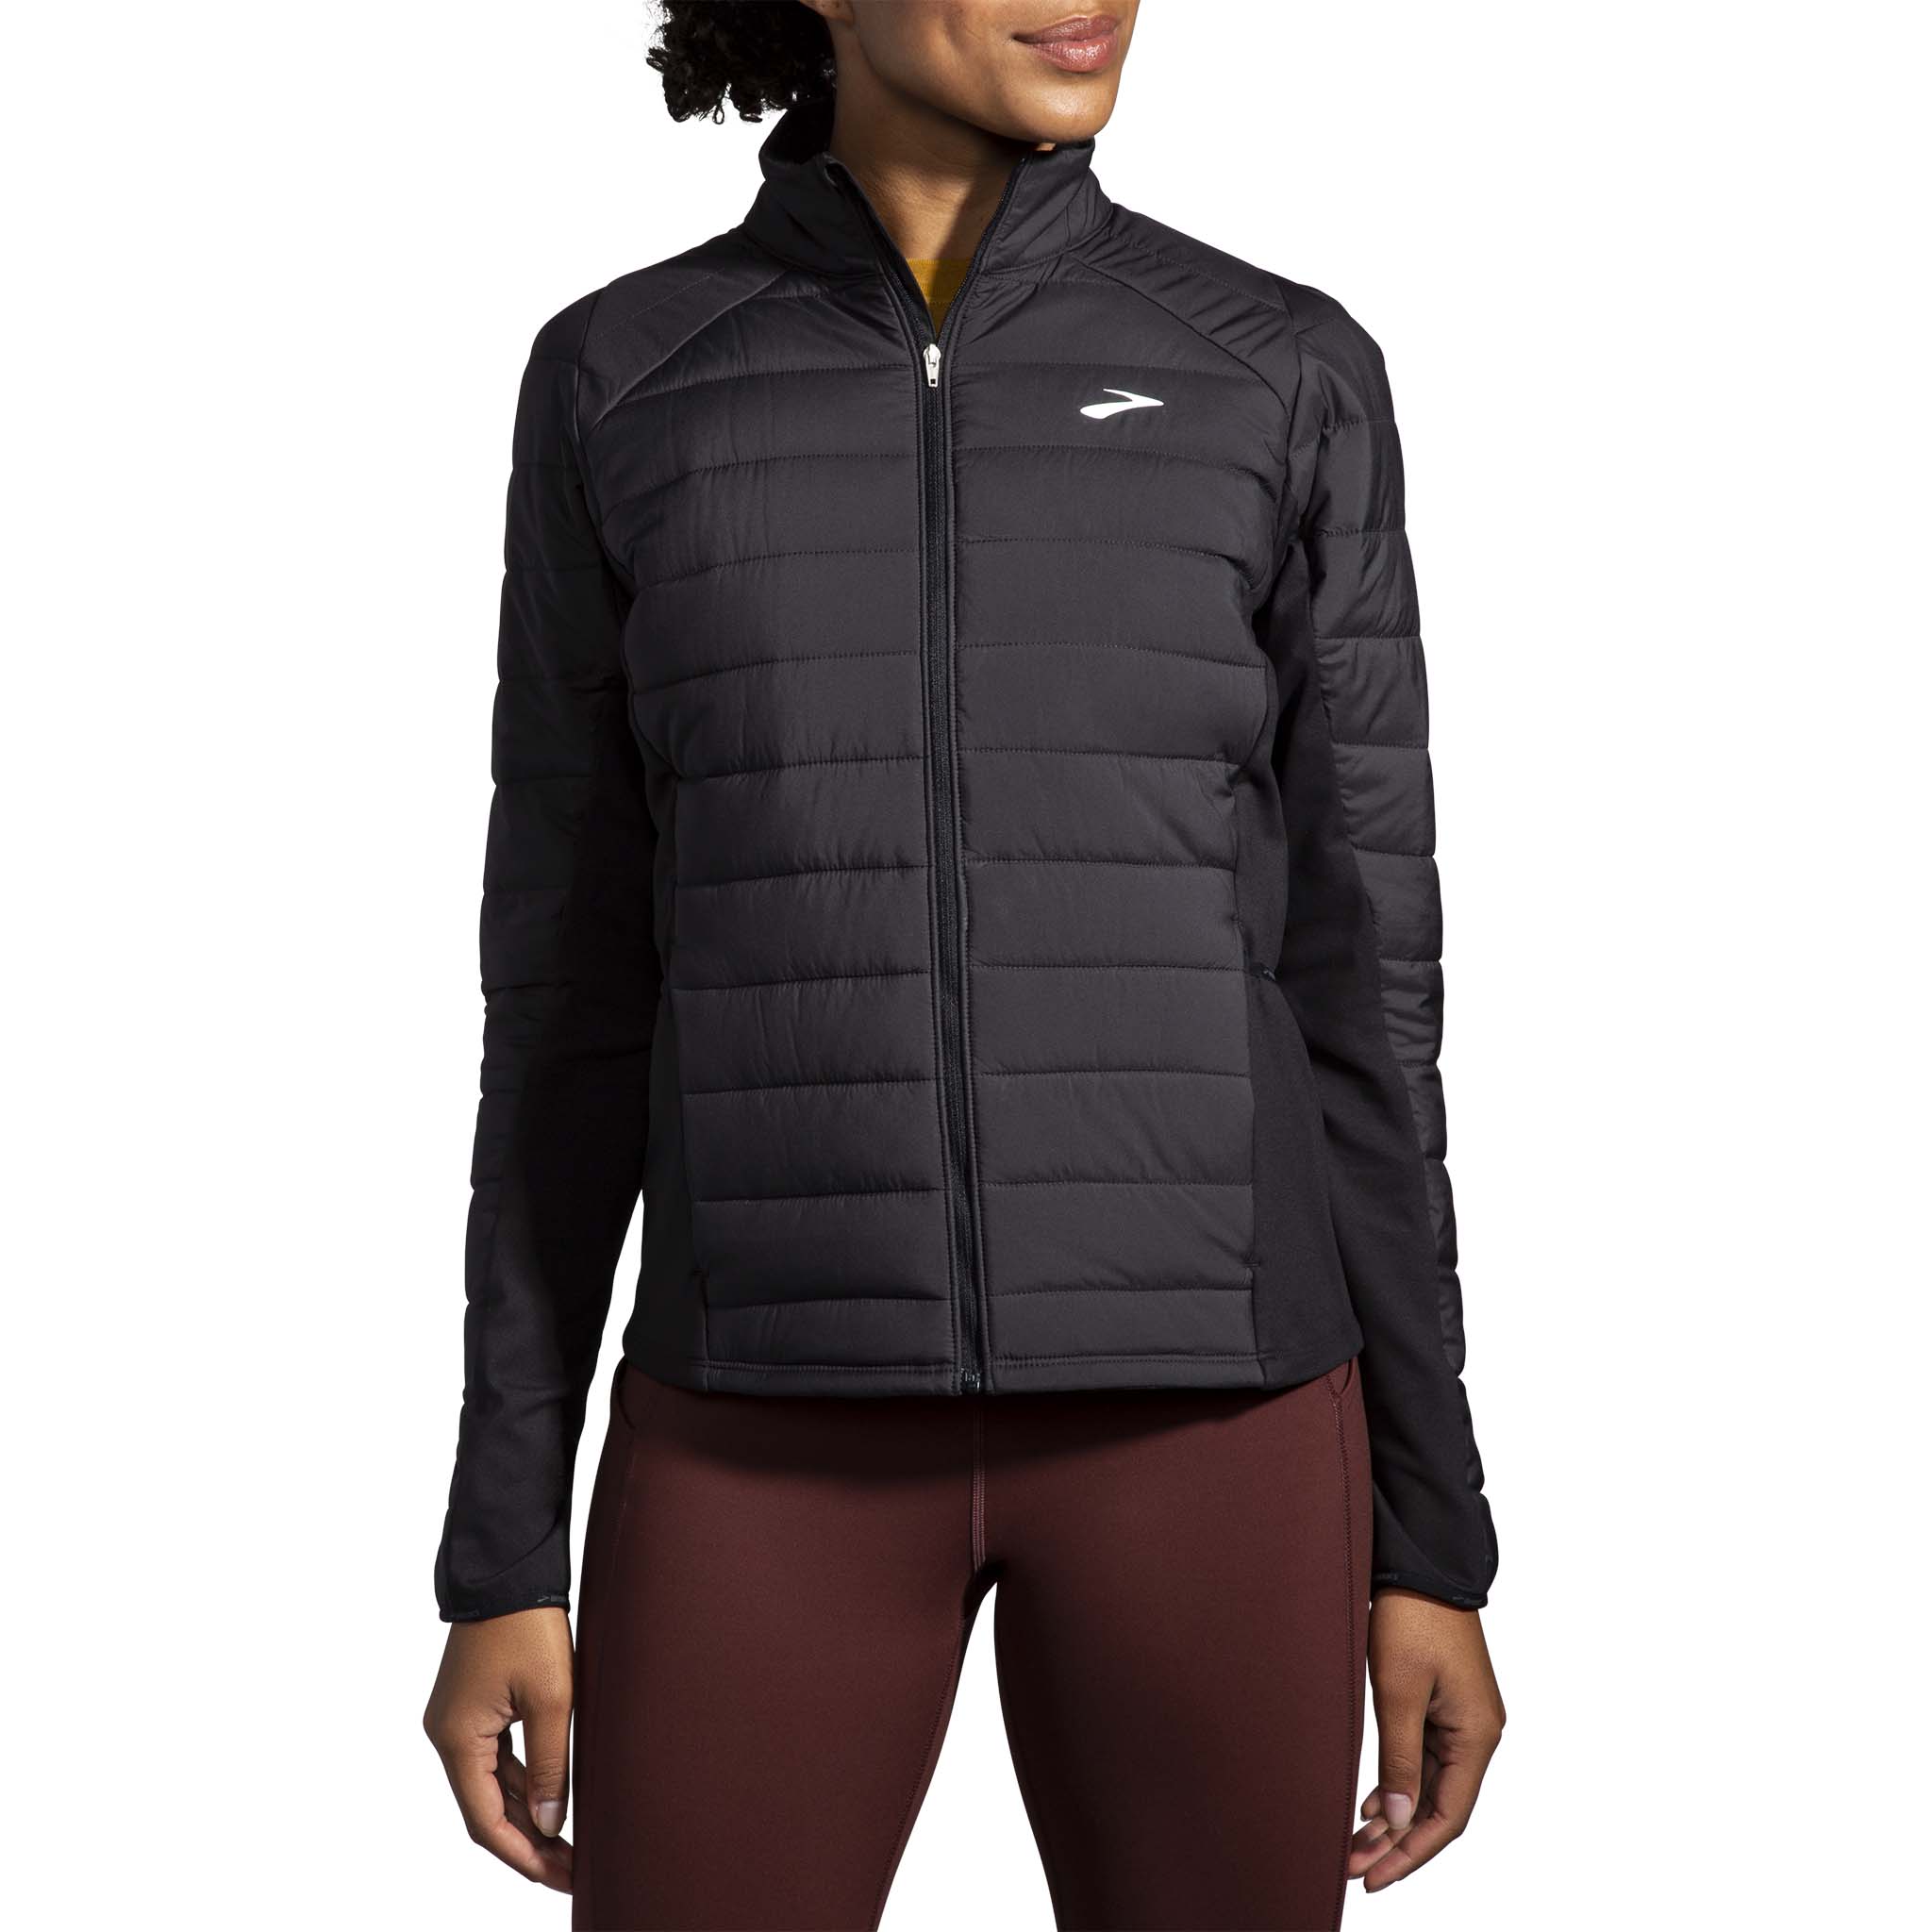 Brooks Shield Hybrid Jacket 2.0 running jacket for women – Soccer